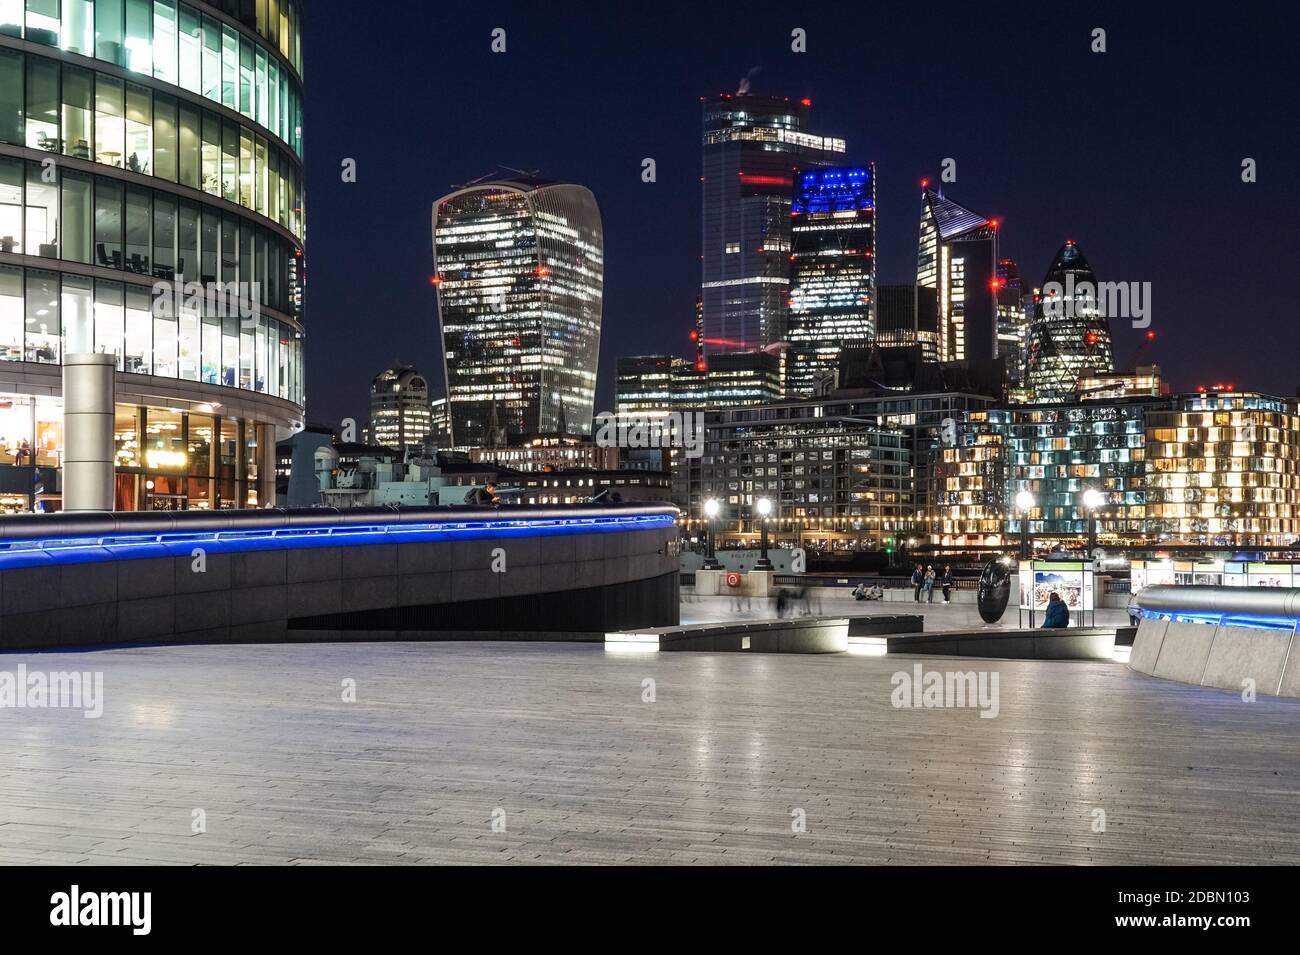 La City de Londres la nuit vu de More London Riverside, Londres Angleterre Royaume-Uni Banque D'Images